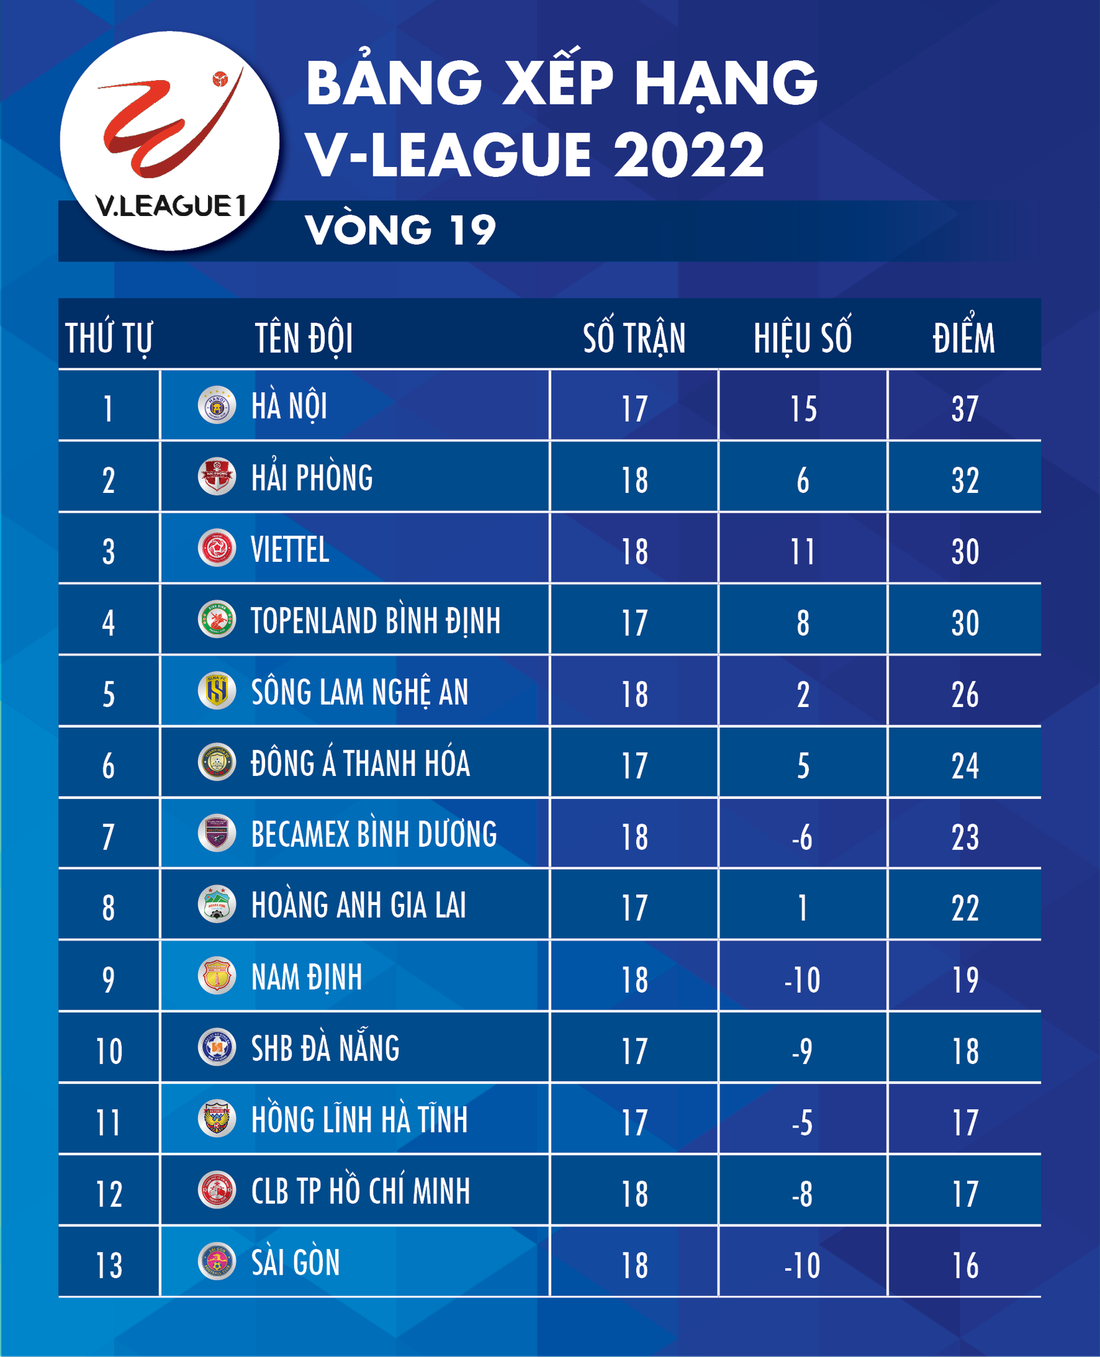 Bảng xếp hạng V-League 2022 sau vòng 19: Hà Nội đứng đầu, Sài Gòn xếp cuối - Ảnh 1.